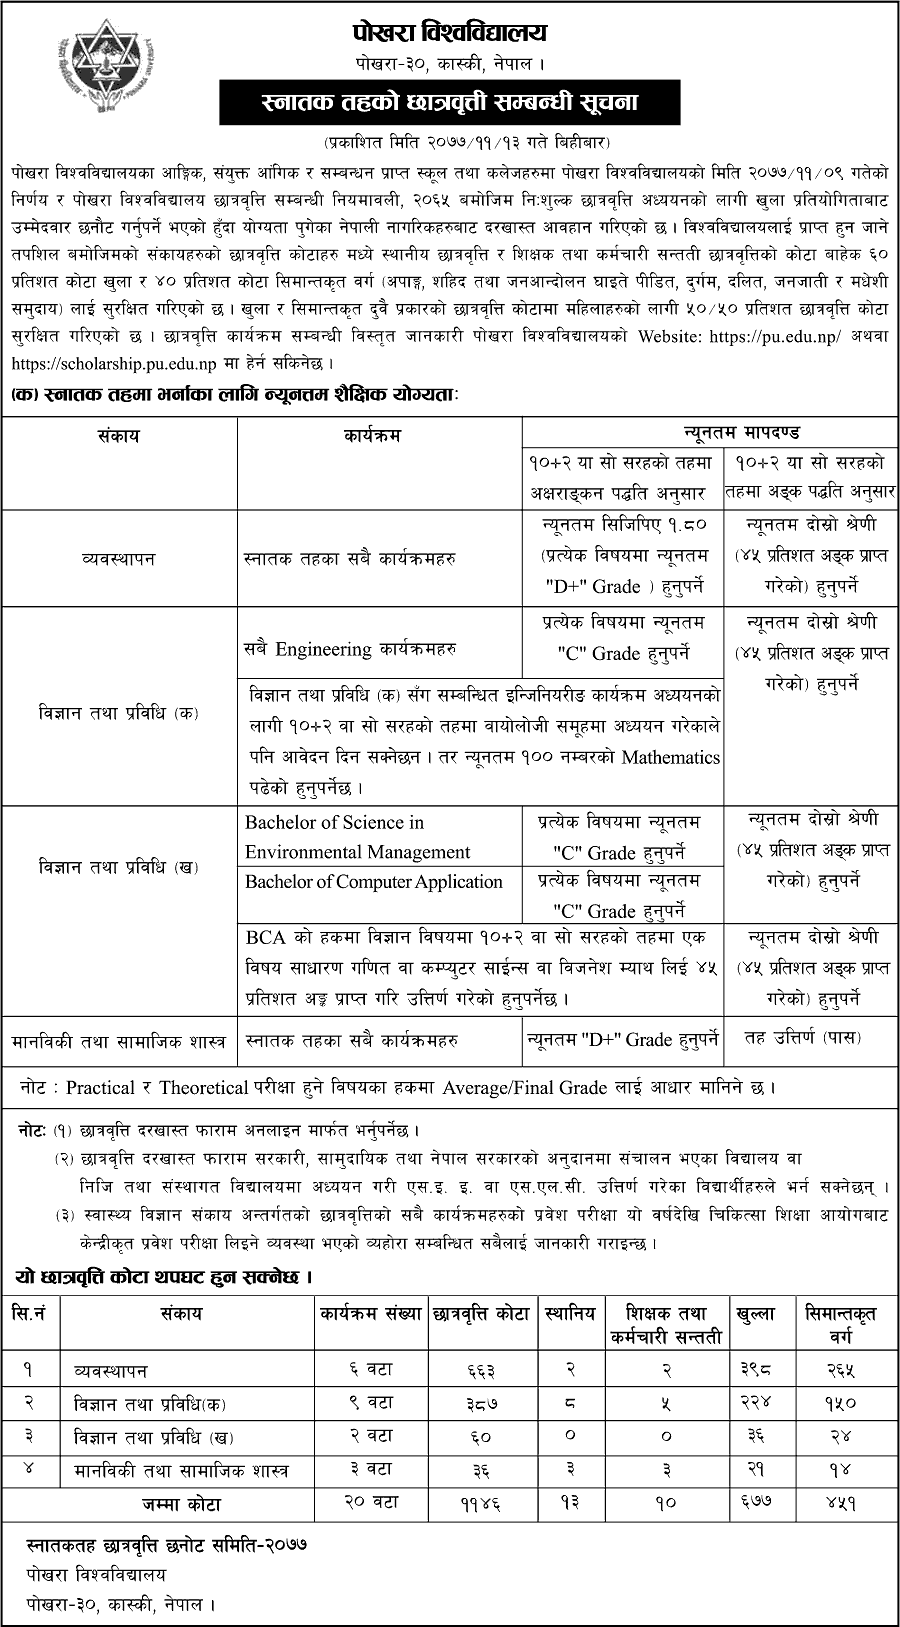 Apply for Bachelor Level Full Scholarship from Pokhara University